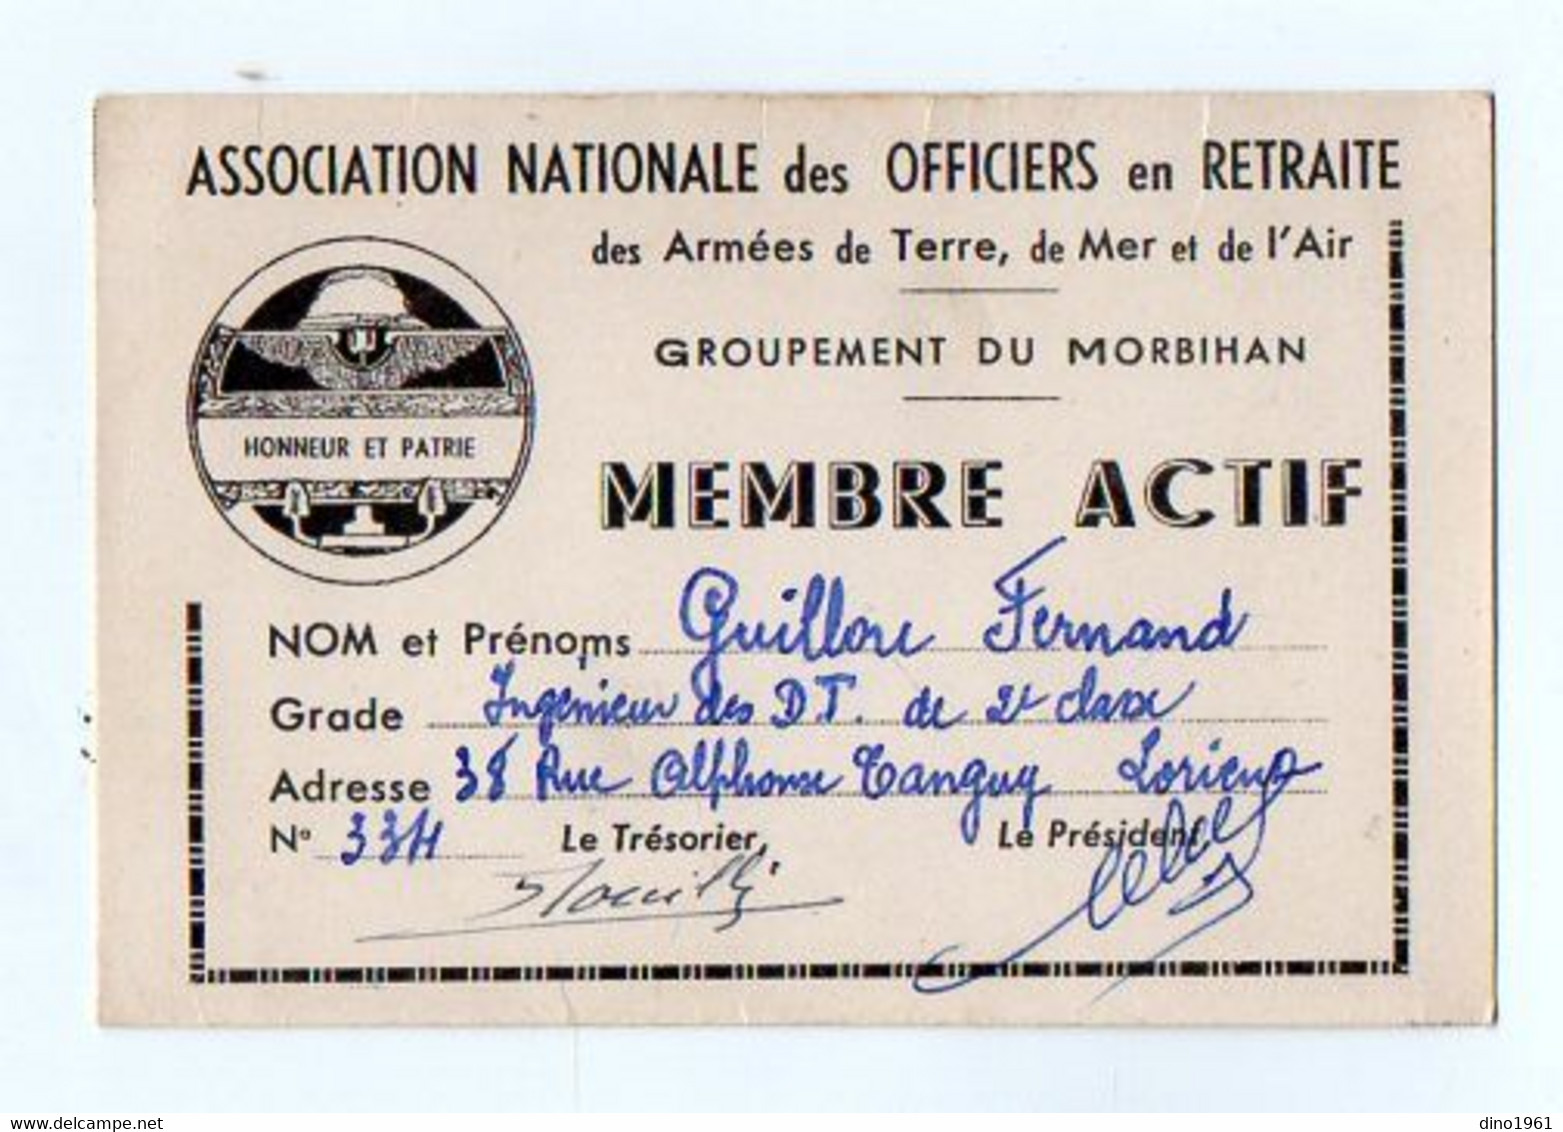 VP18.112 - MILITARIA - LORIENT - Carte De L'Association Nationale Des Officiers En Retraite - Groupement Du Morbihan - Documenti